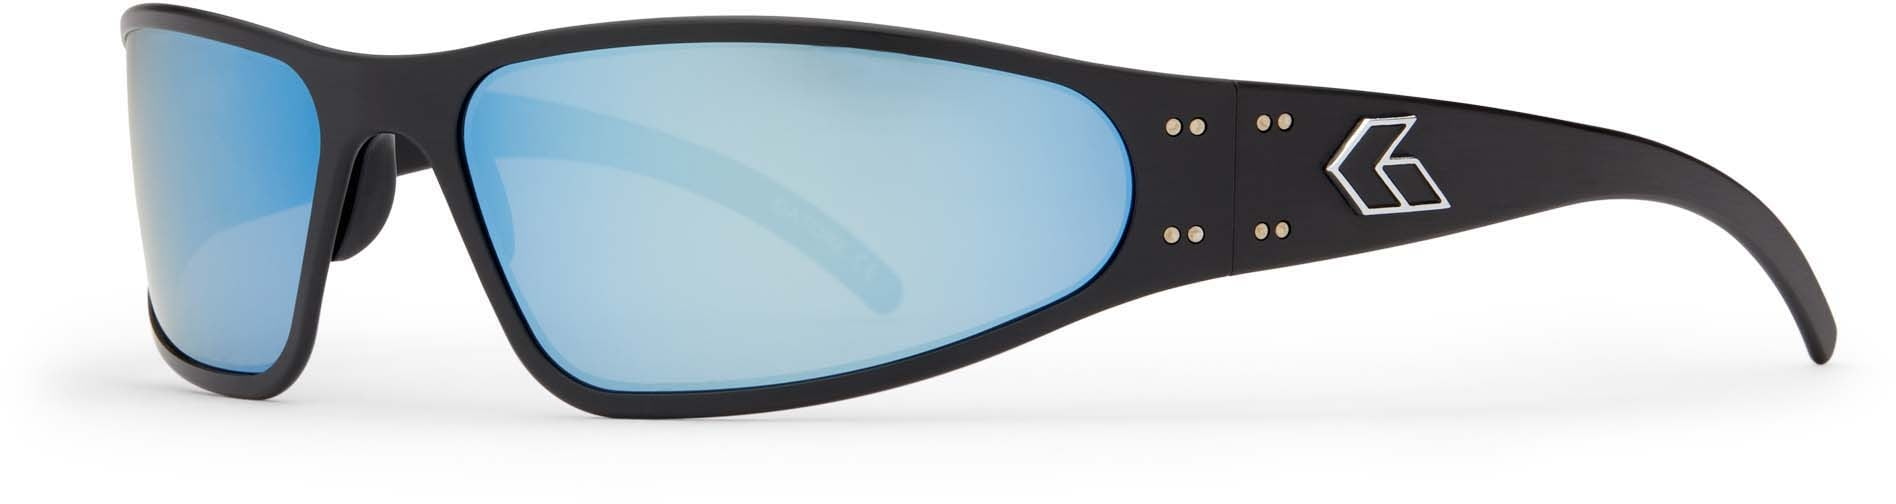 Gatorz Wraptor Sunglasses Black Frame Smoke Polarized w/Blue : WRABLK01P-B